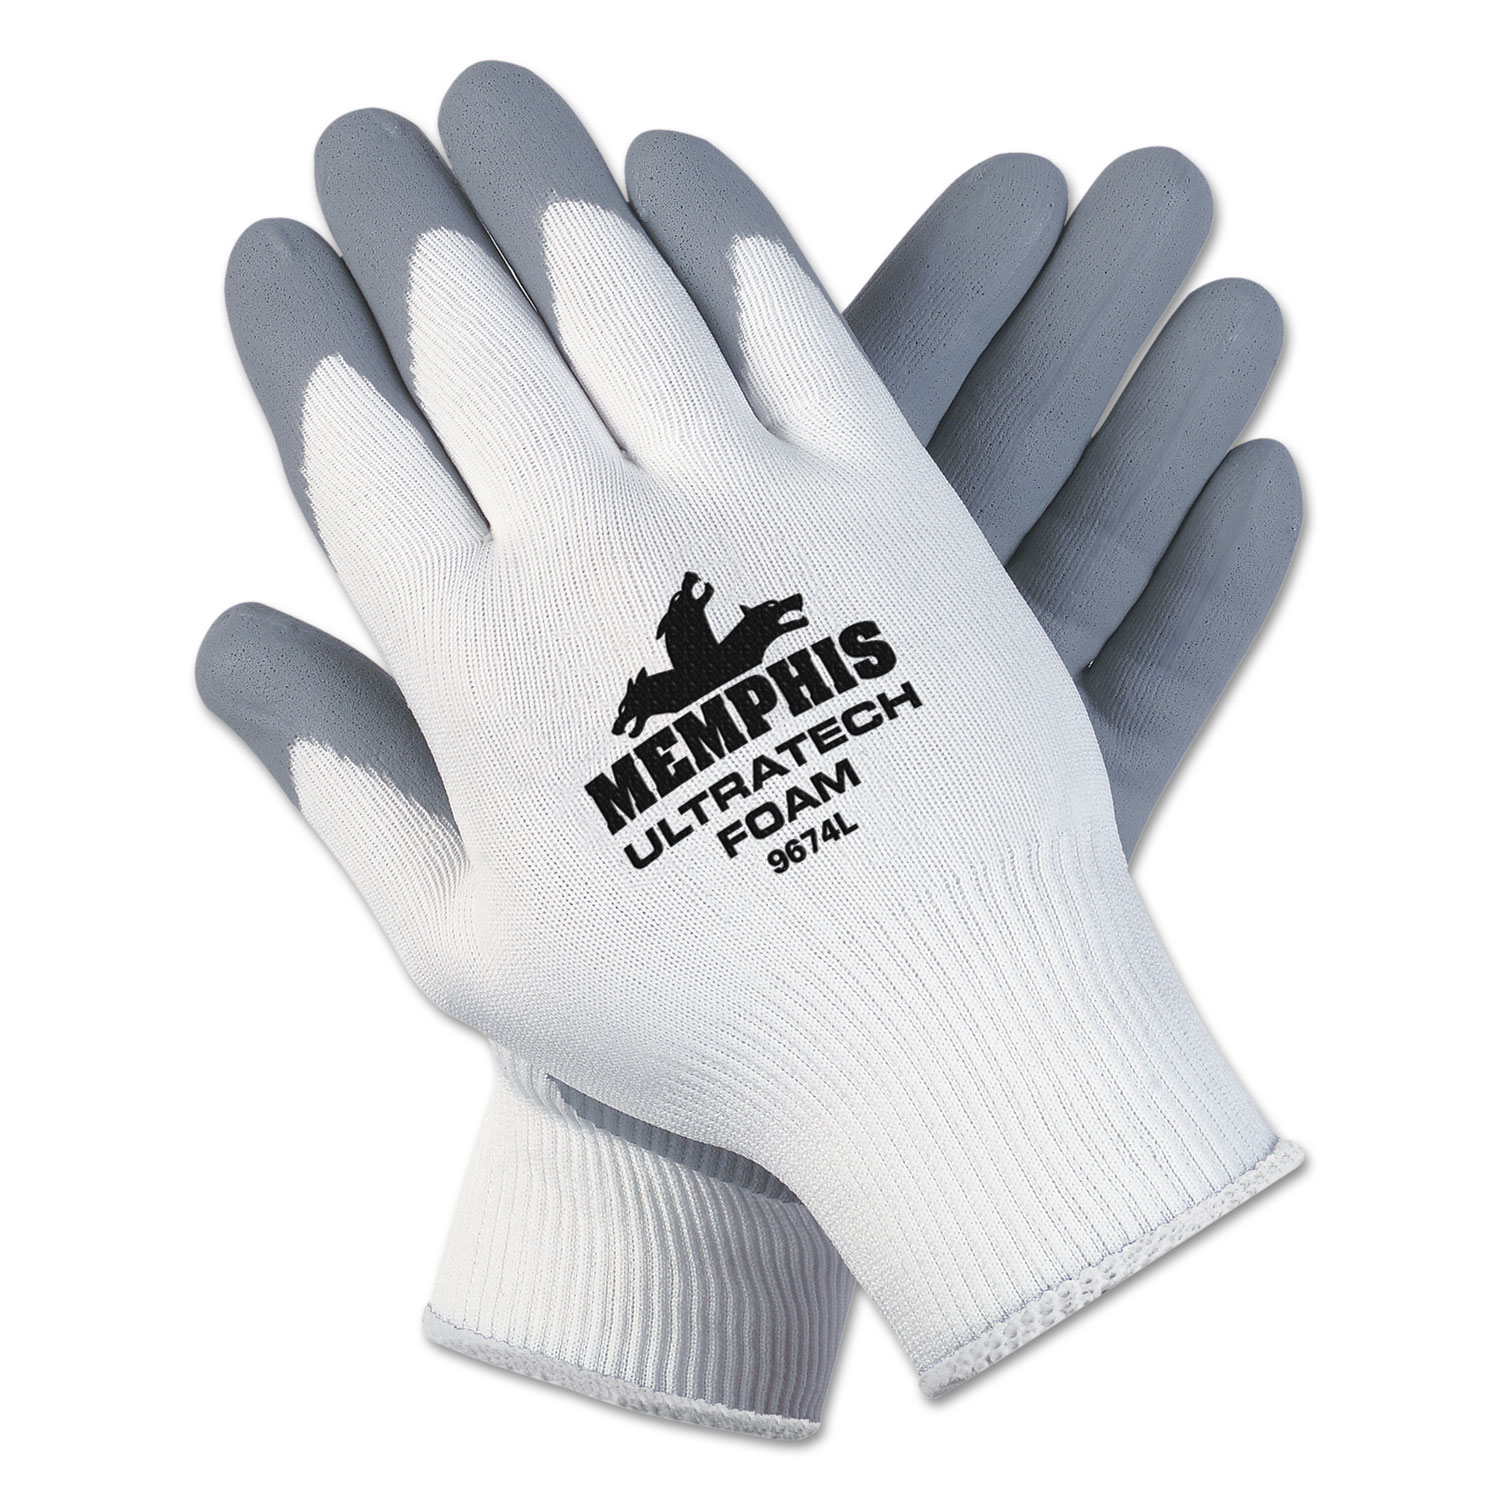  MCR Safety 9674XL Ultra Tech Foam Seamless Nylon Knit Gloves, X-Large, White/Gray, Dozen (CRW9674XLDZ) 